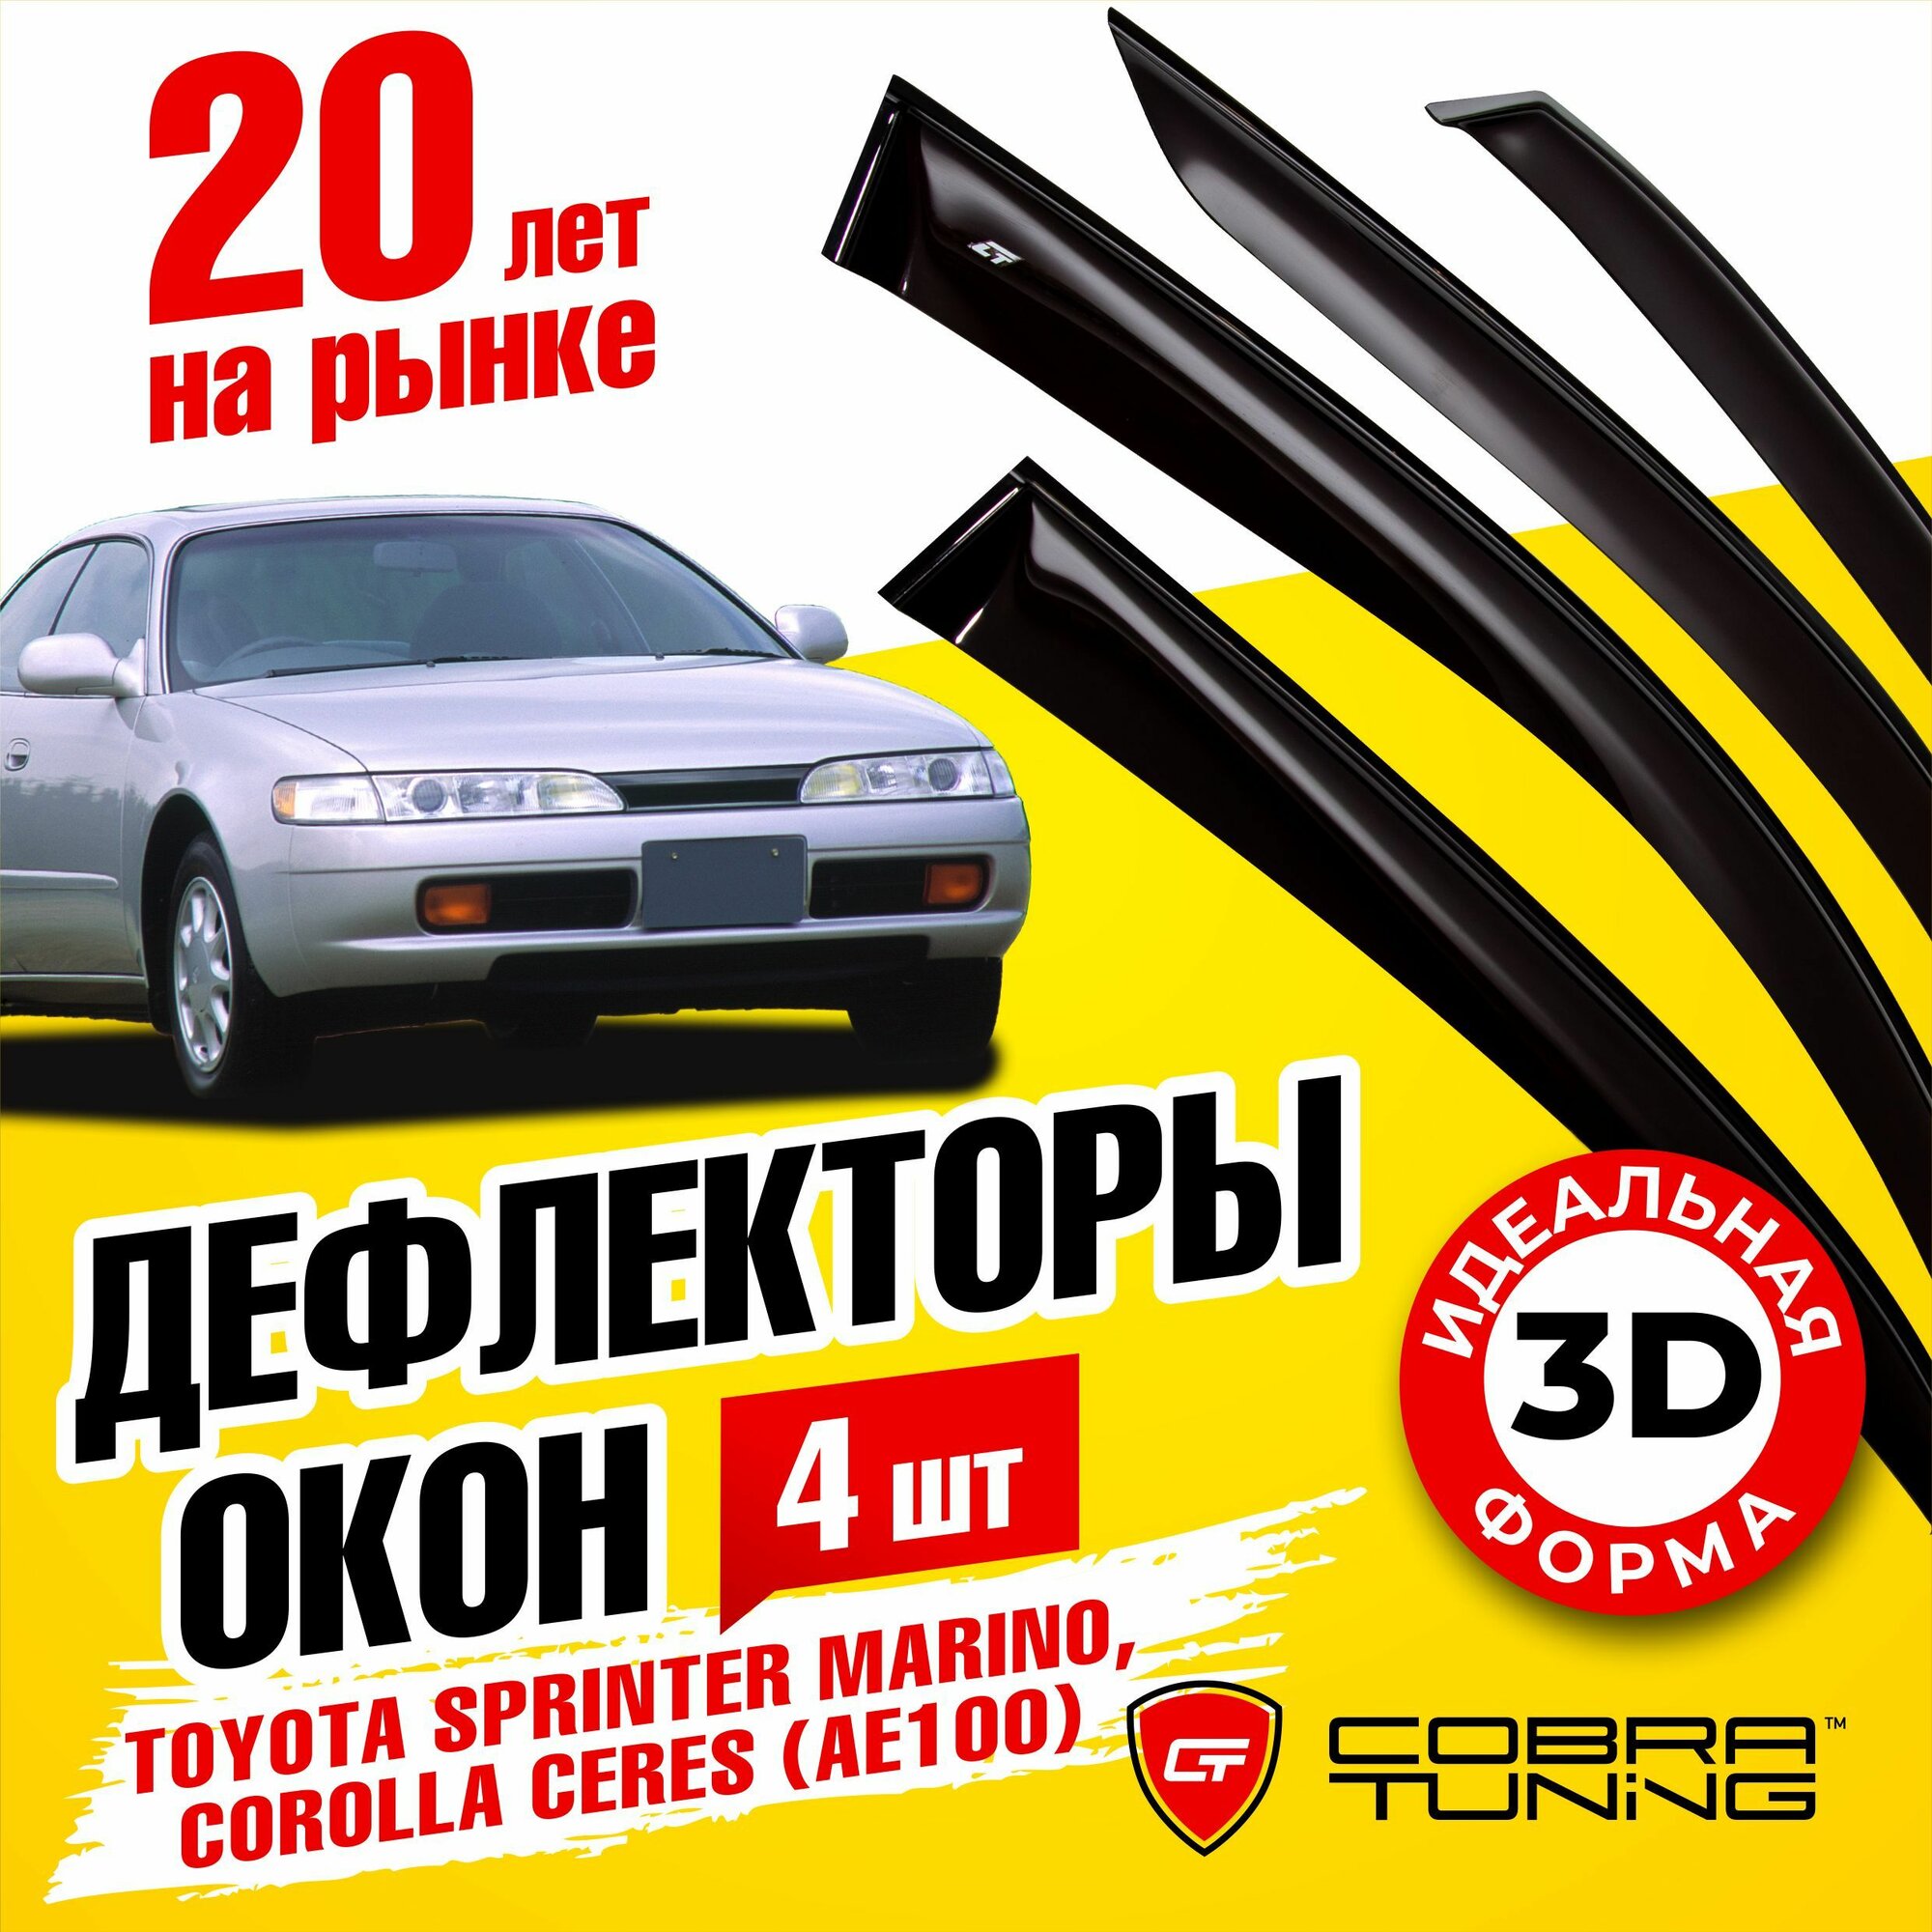 Дефлекторы боковых окон для Toyota Sprinter Marino (Тойота Спринтер Марино) Corolla Ceres (Королла Керес) (AE100) 1992-1999 ветровики на двери автомобиля Cobra Tuning